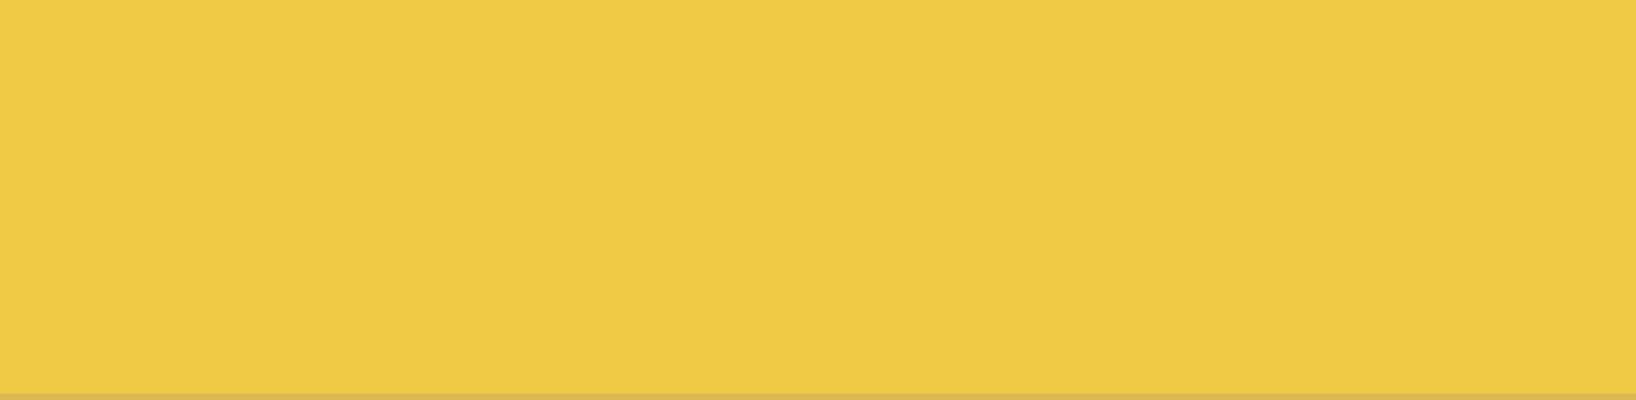 Żółty nr koloru 194 (Dopłata 15%)